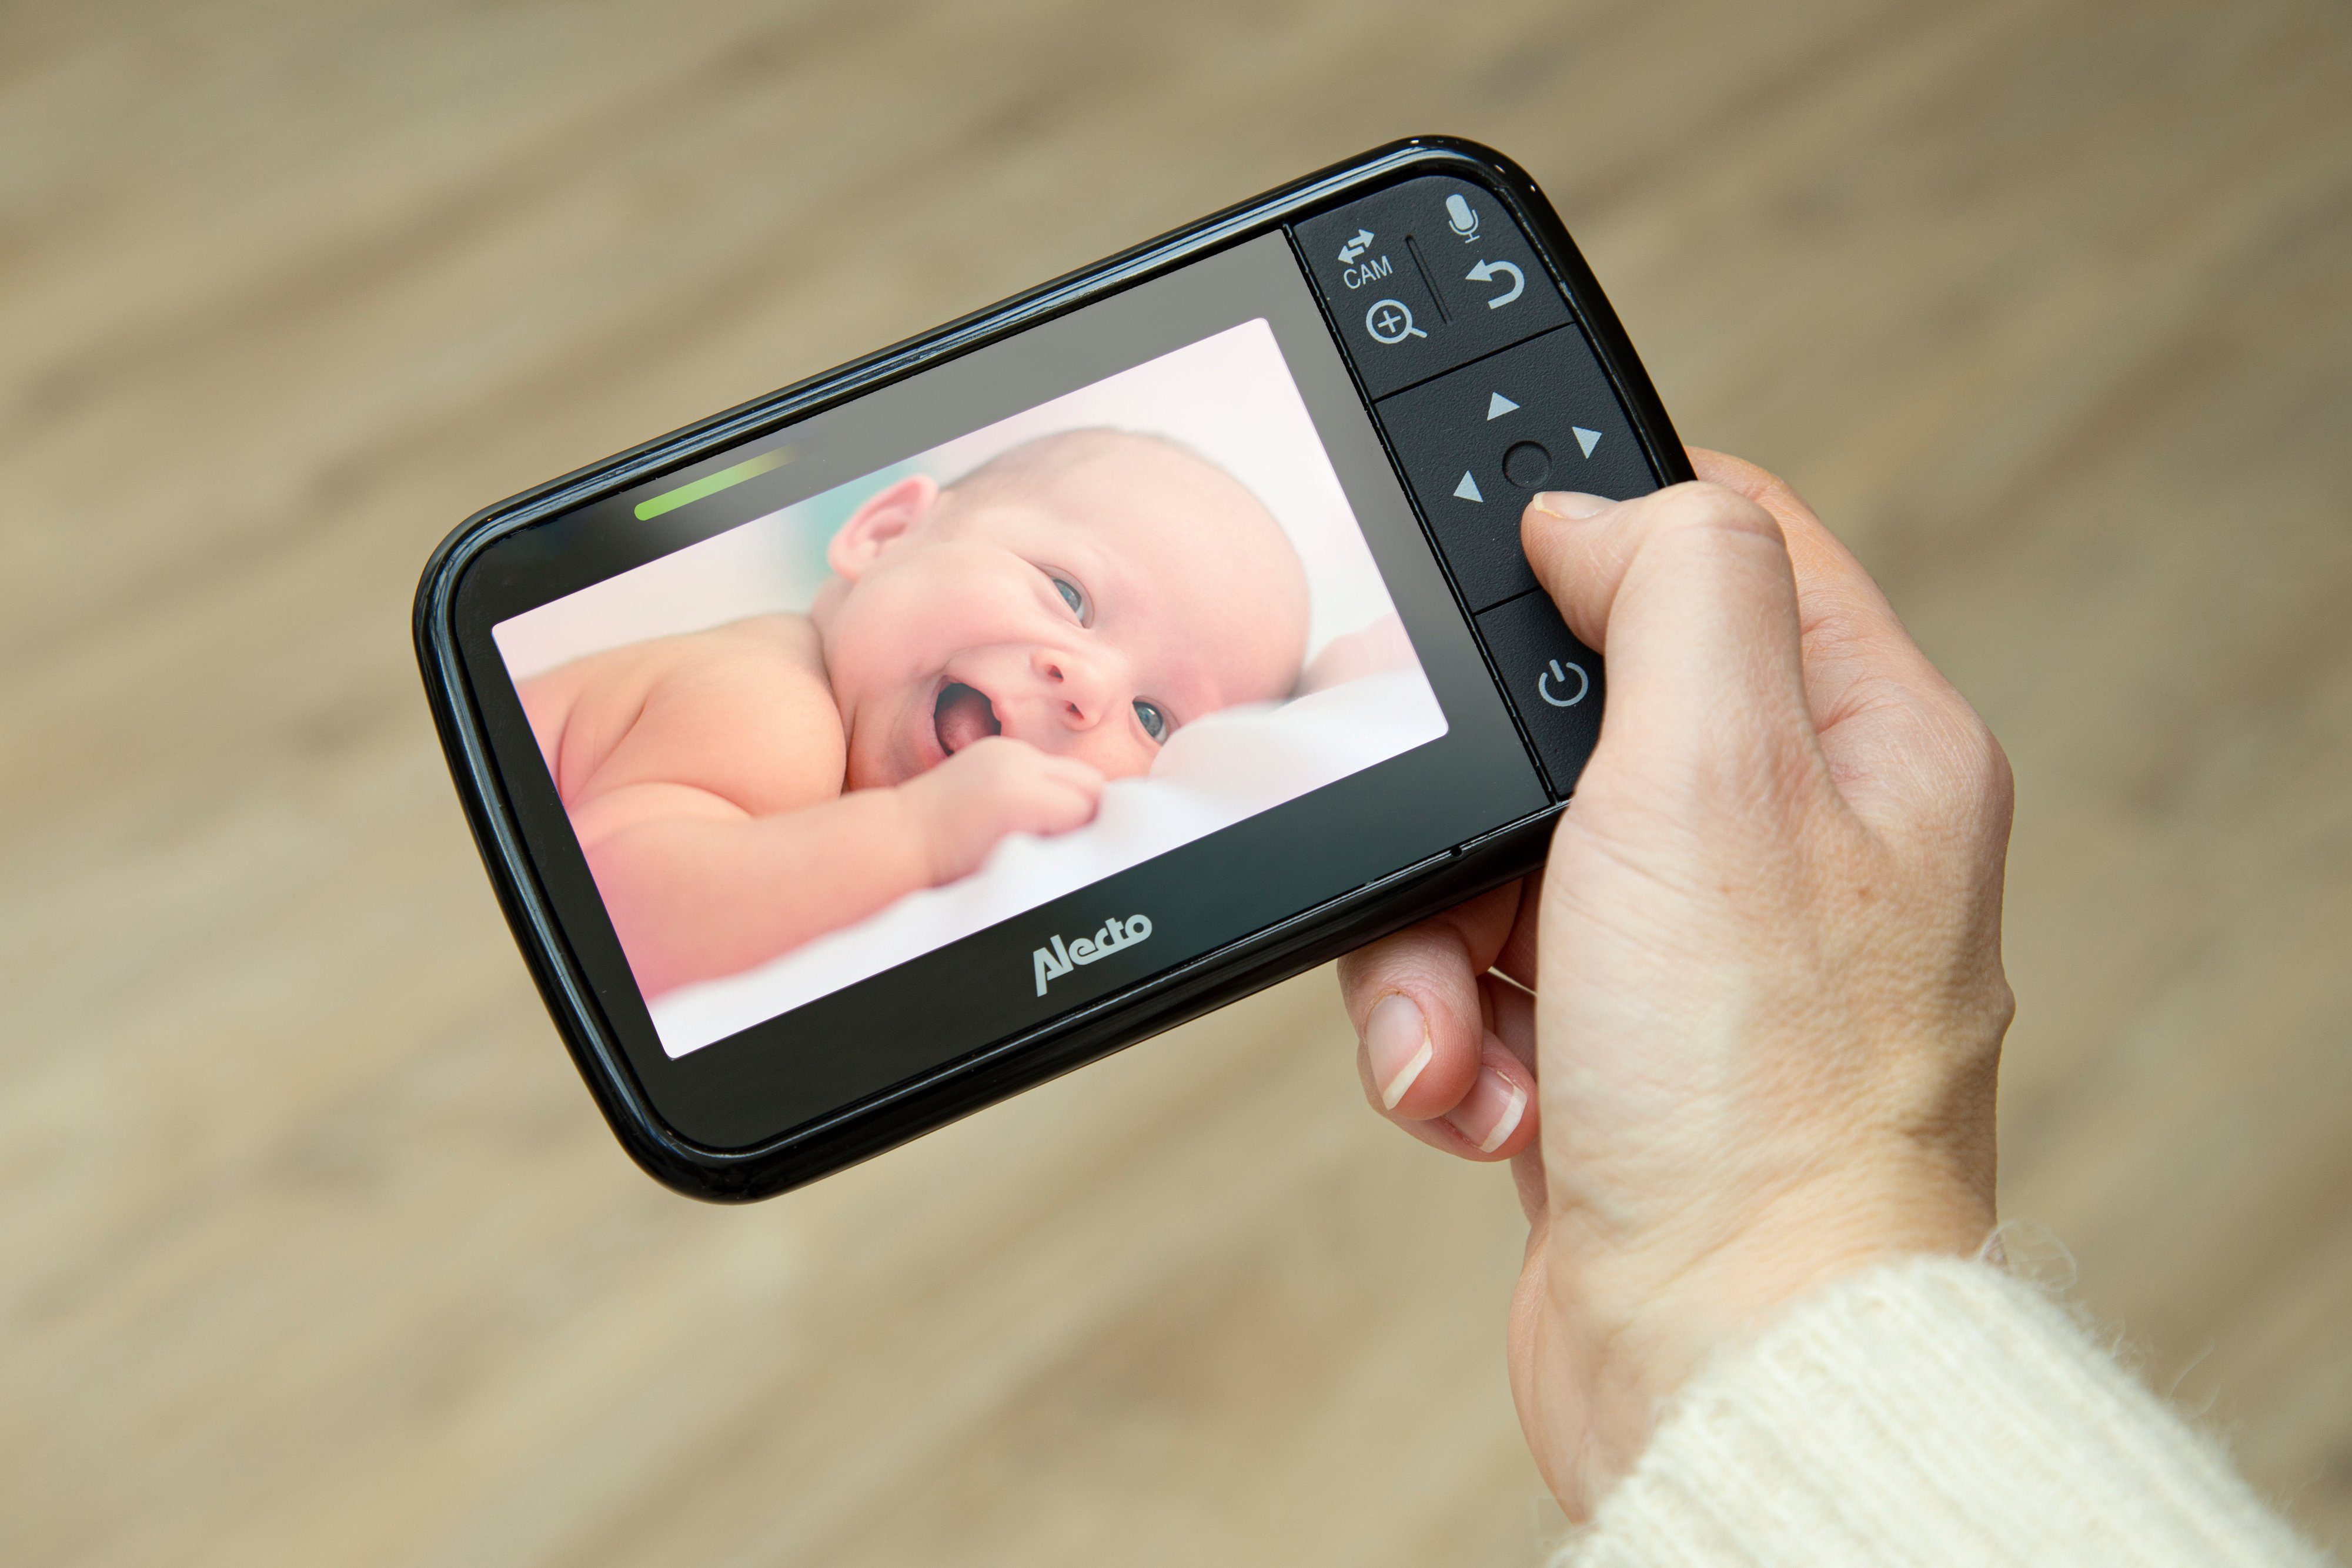 Alecto Video-Babyphone DVM149, 4.3"-Farbdisplay und Kamera Babyphone 1-tlg., Schwarz mit